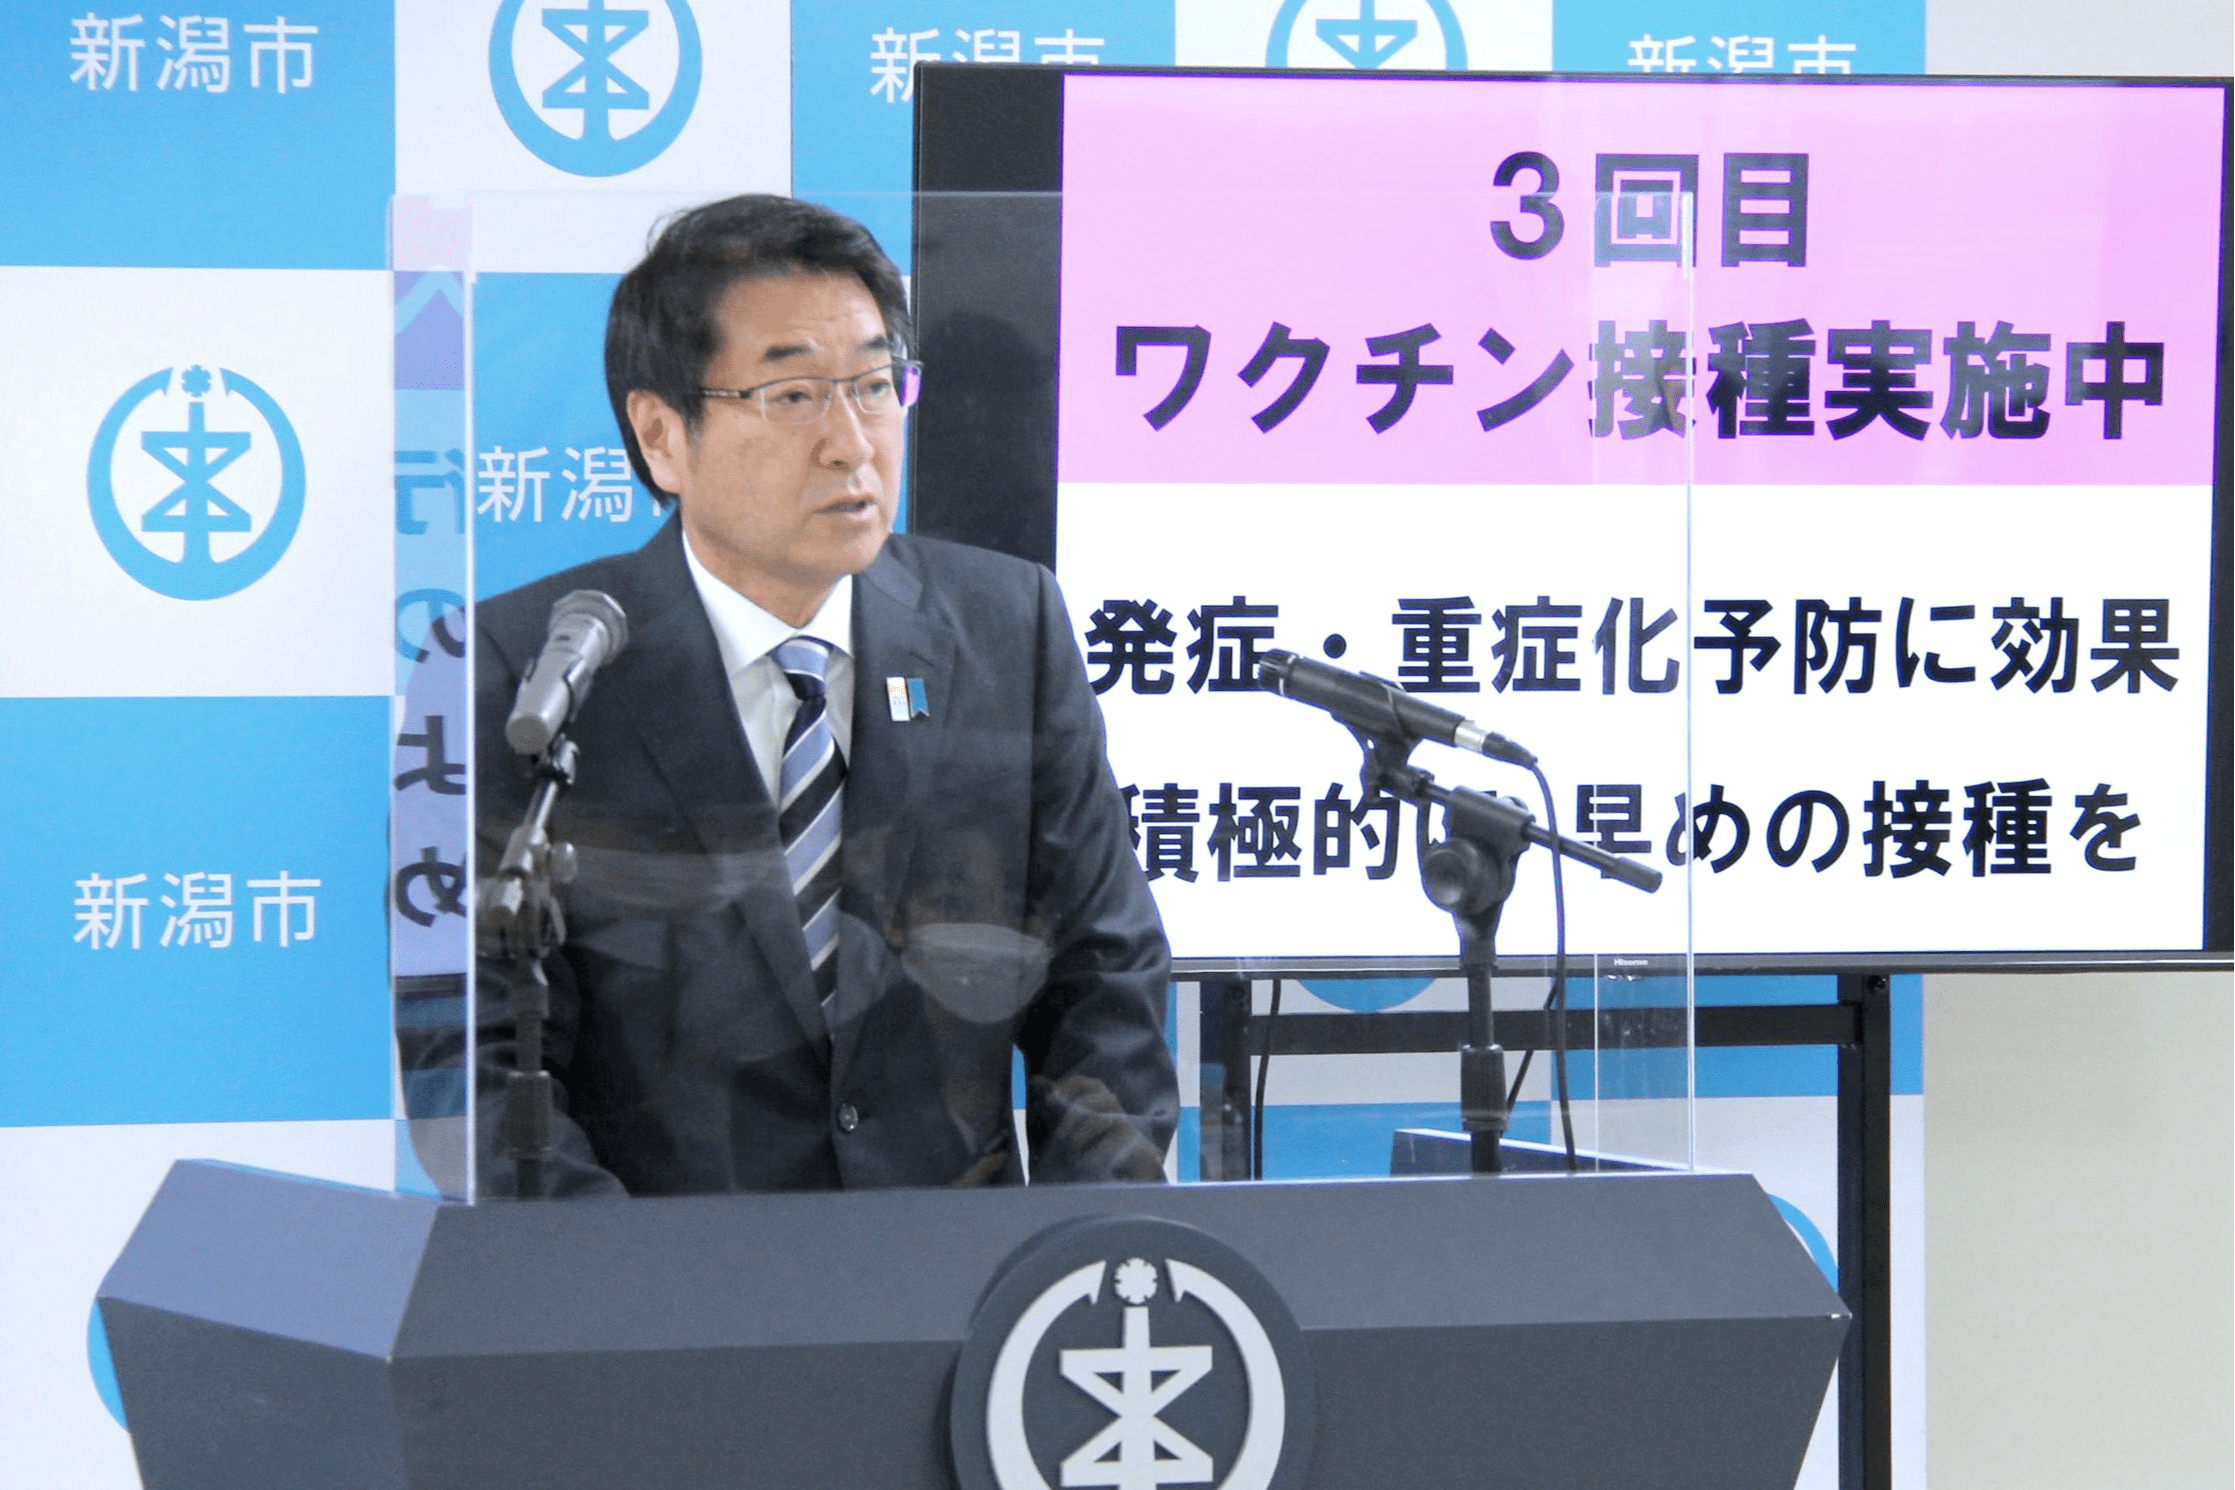 岸田首相に名刺差し出すと返事は…「今さら」 | 新潟日報デジタルプラス